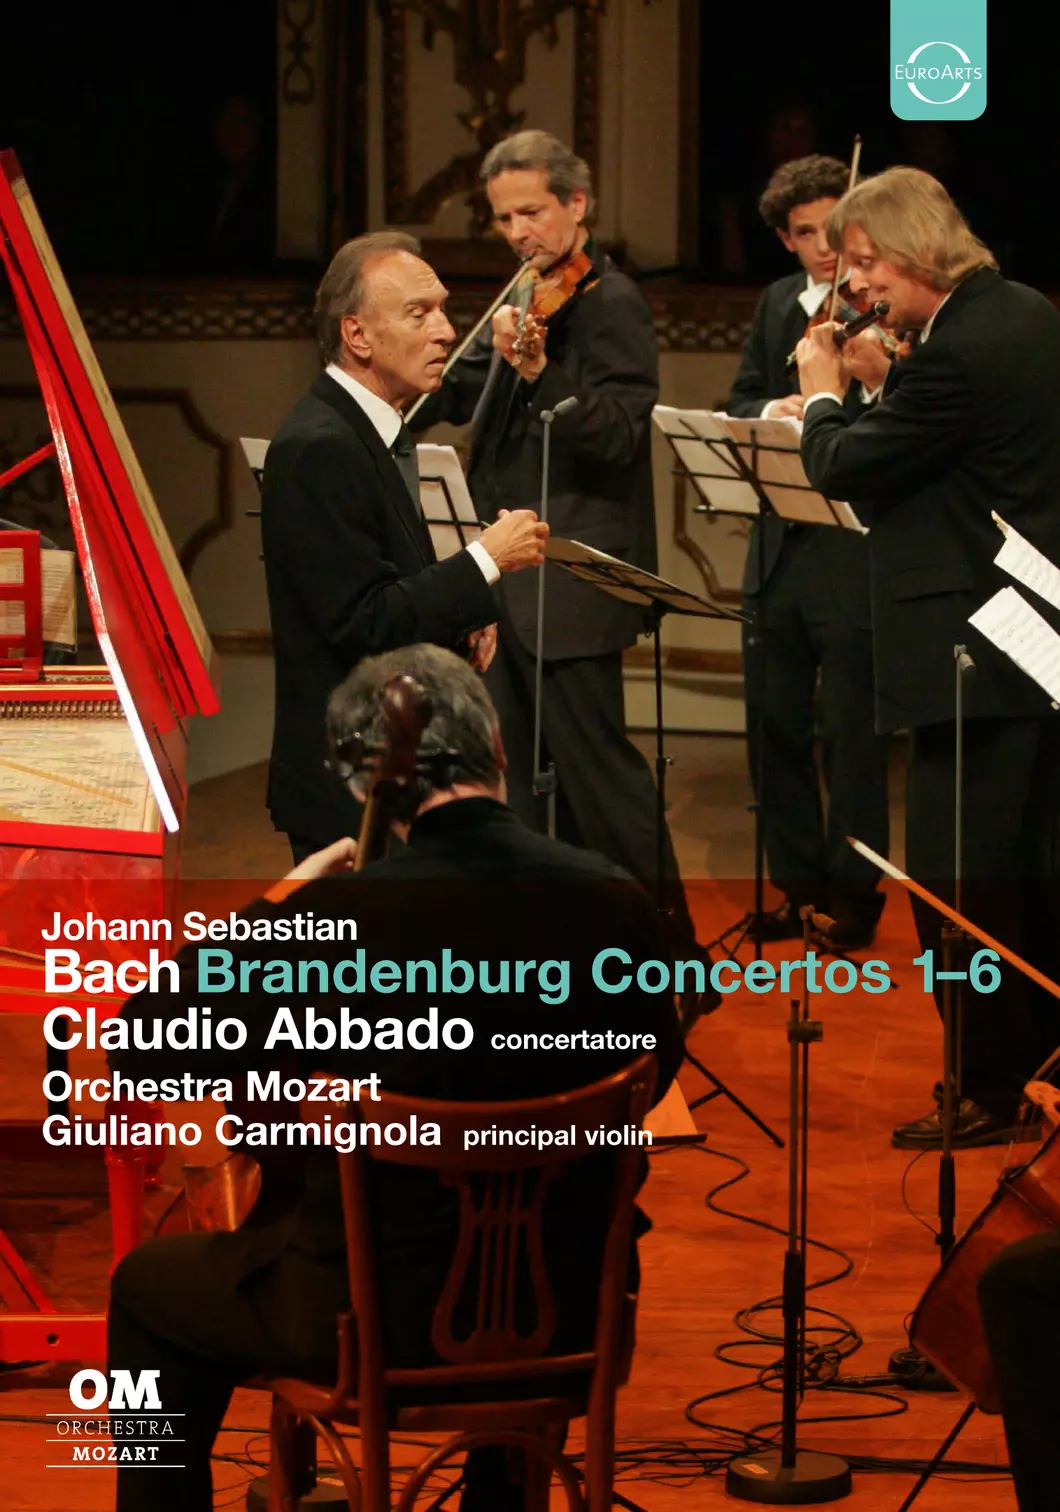 Brandenburg Concertos Claudio Abbado